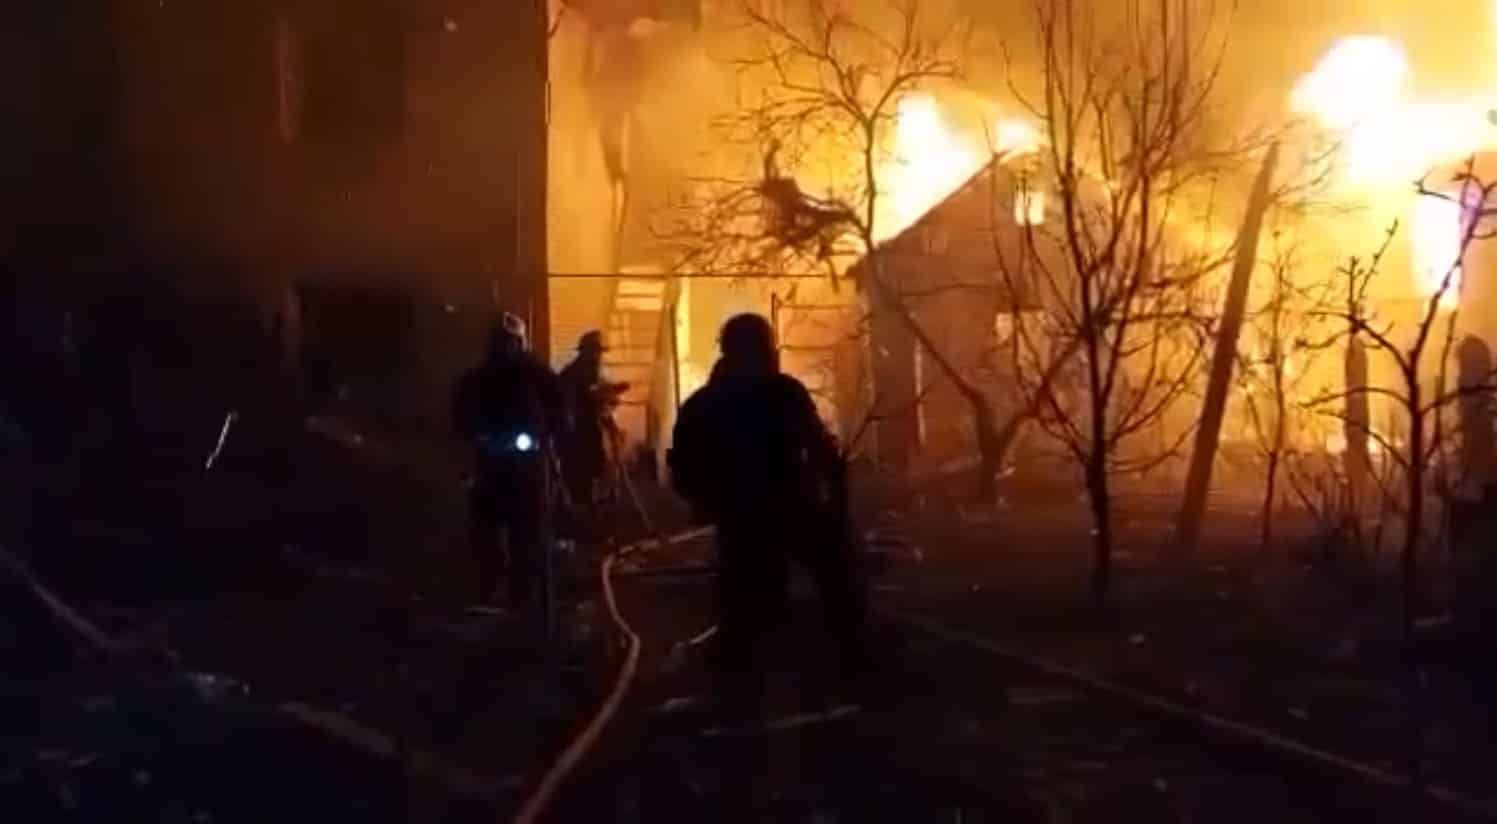 Los bomberos luchan contra los efectos de los misiles lanzados sobre Zhytomyr (Ucrania)